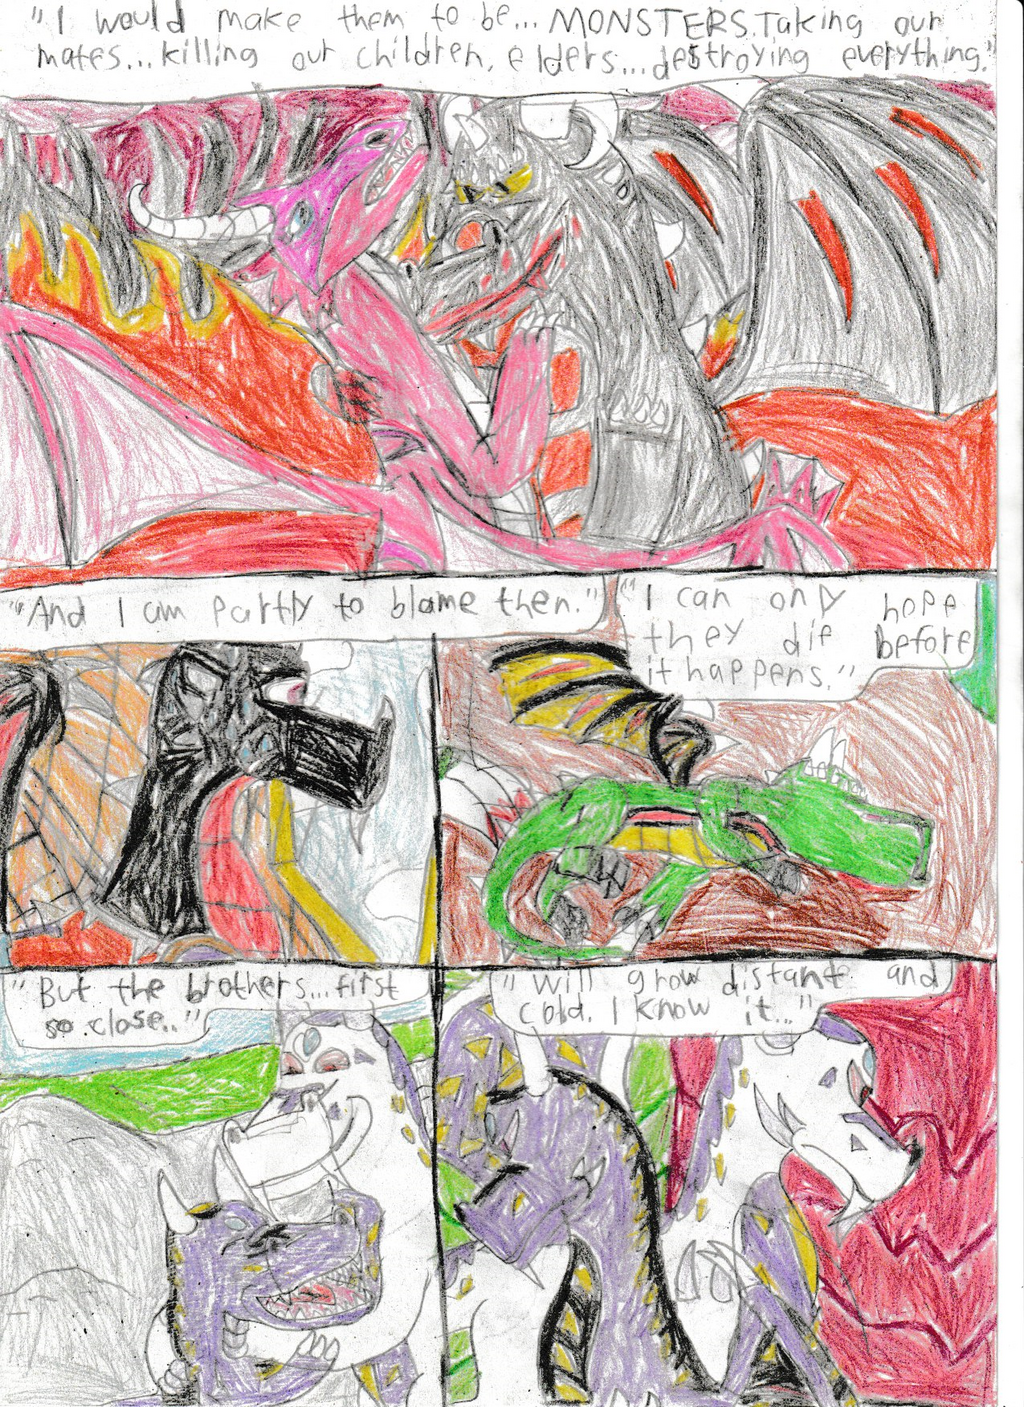 Legend of dragon: Great guilt:Pg 6